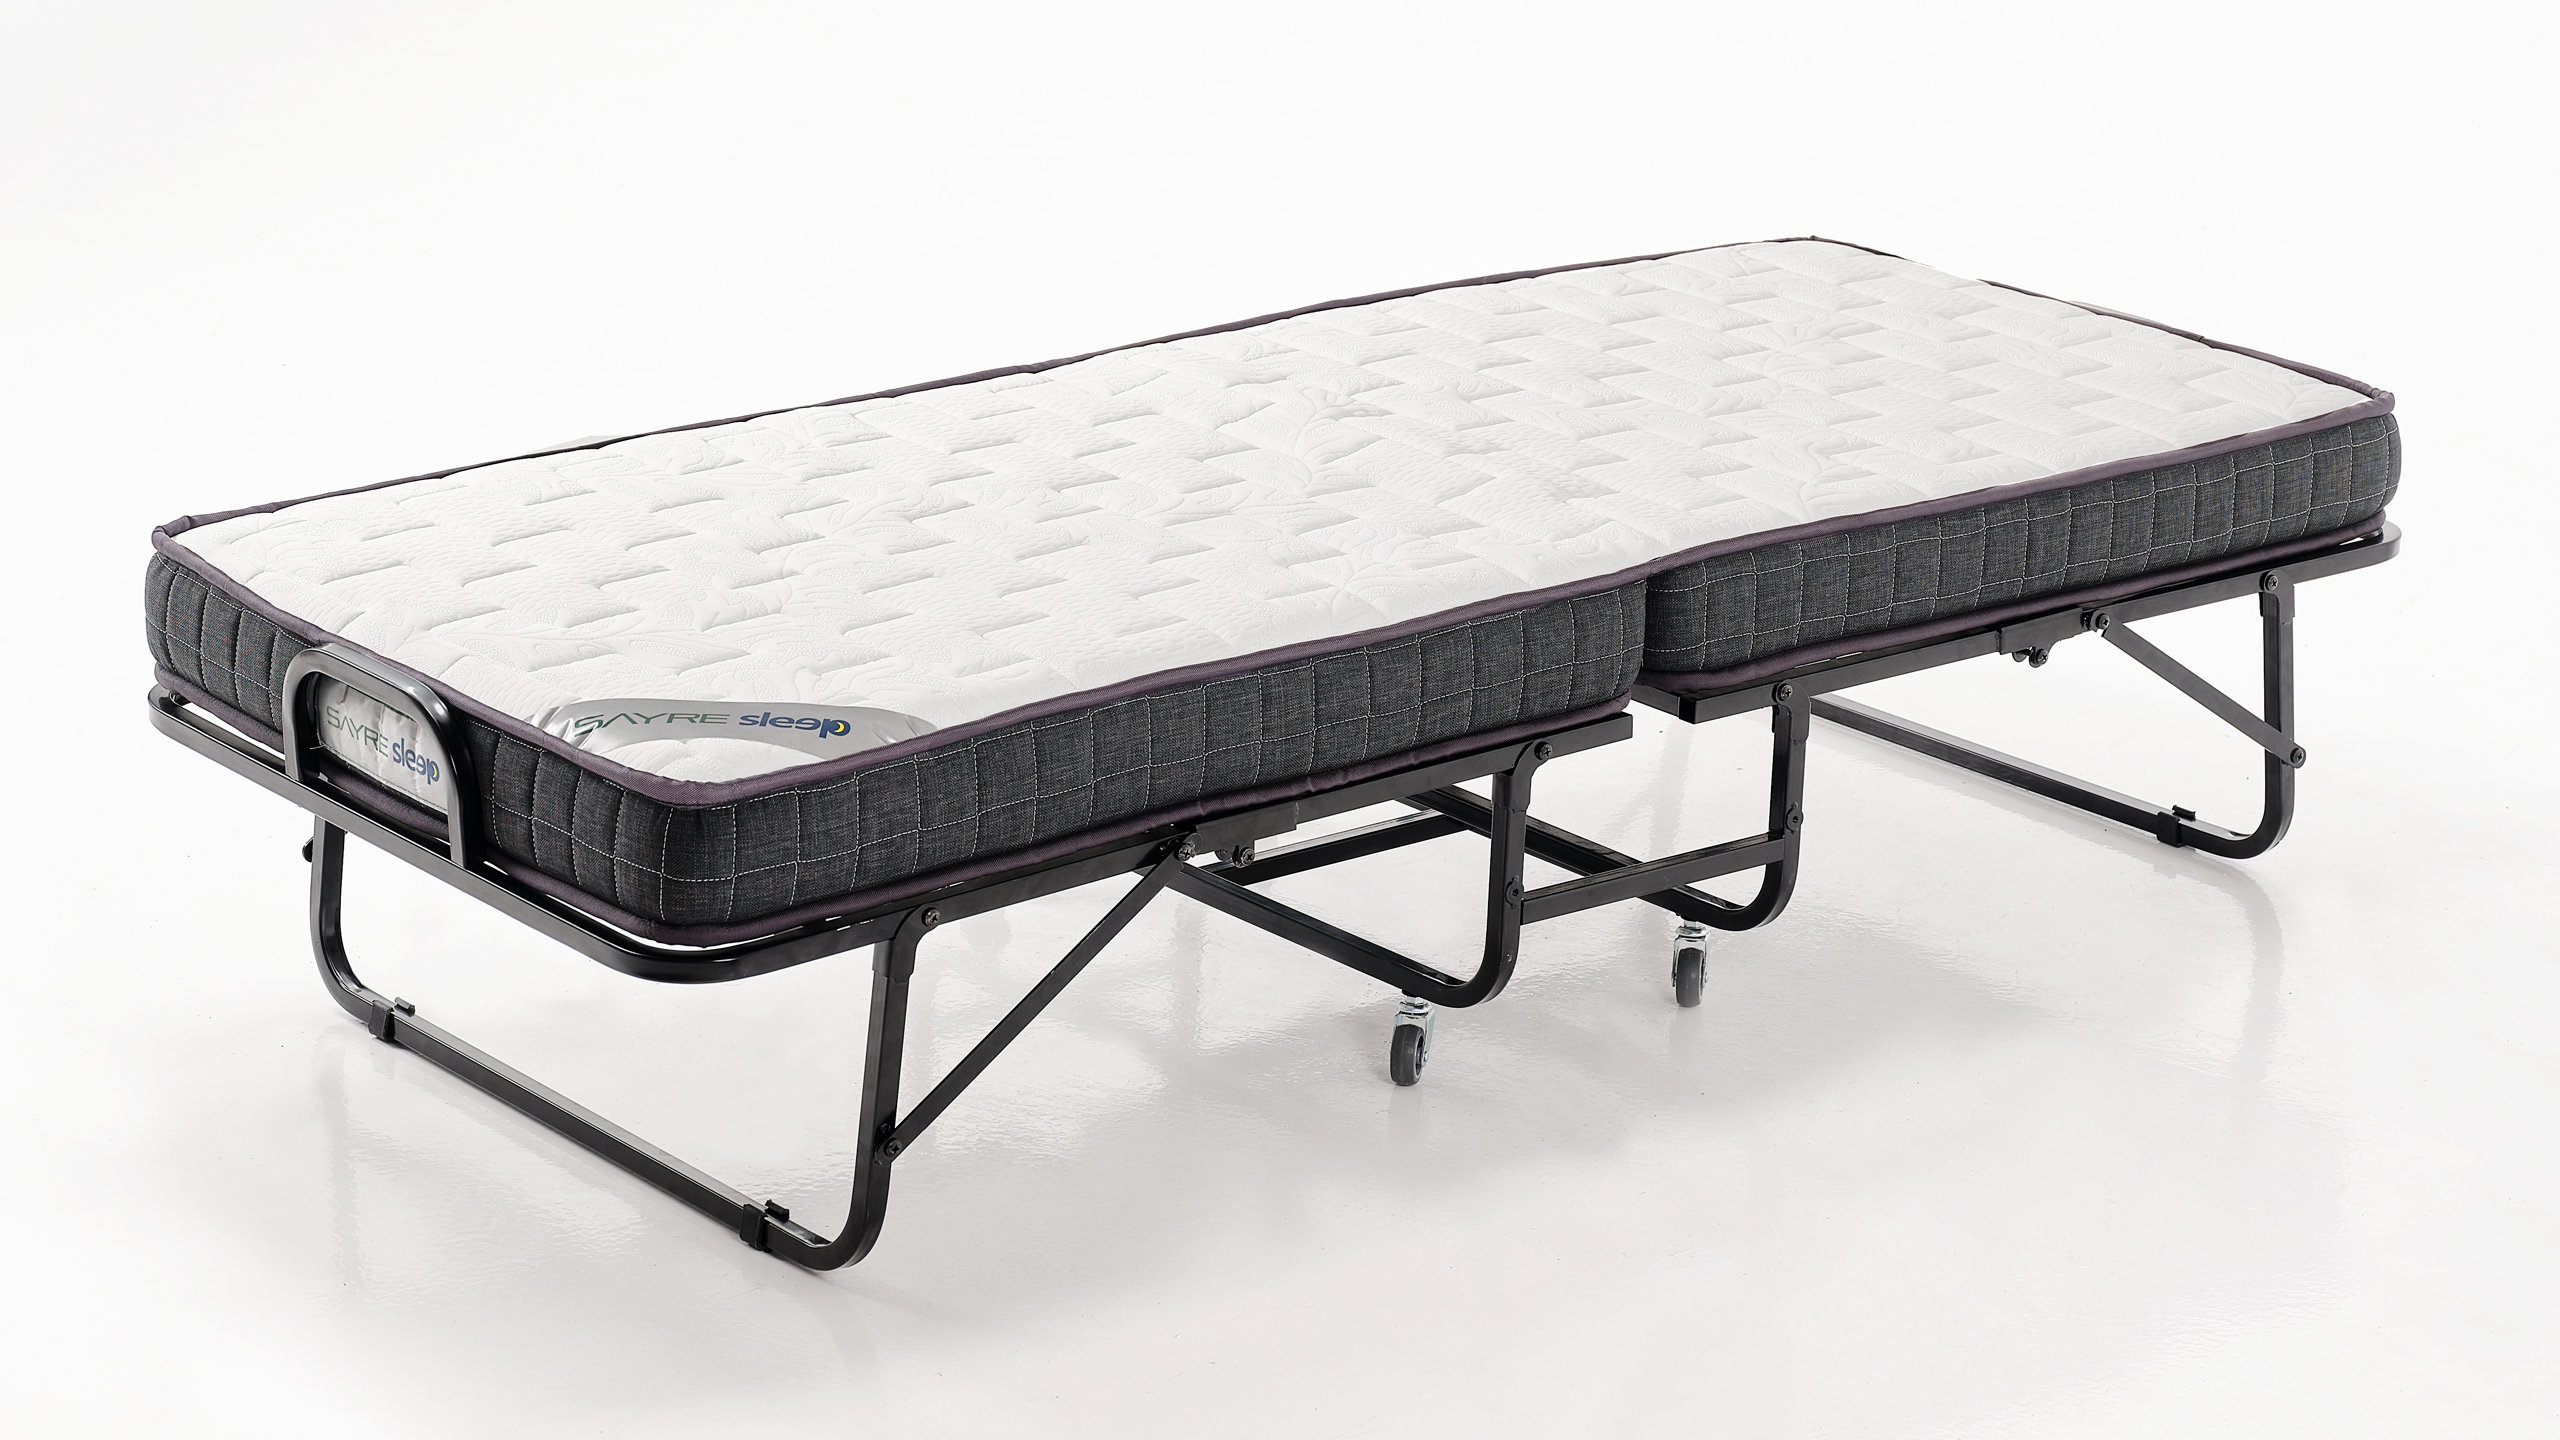 Alwyn Home Folding Bed with Memory Foam Mattress - 75 x 38 Twin